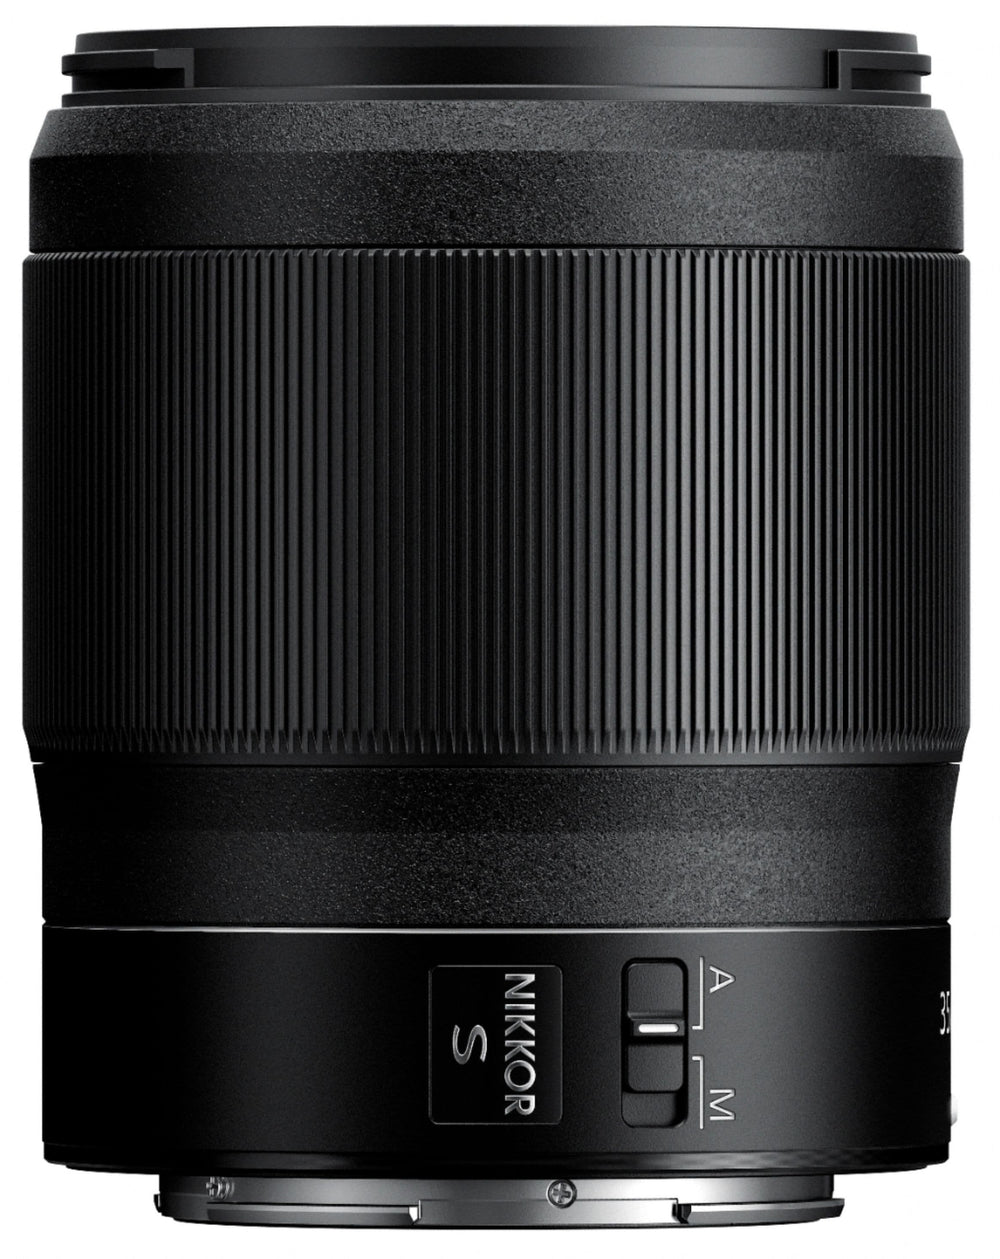 NIKKOR Z 35mm f/1.8 S Standard Prime Lens for Nikon Z Cameras - Black_1